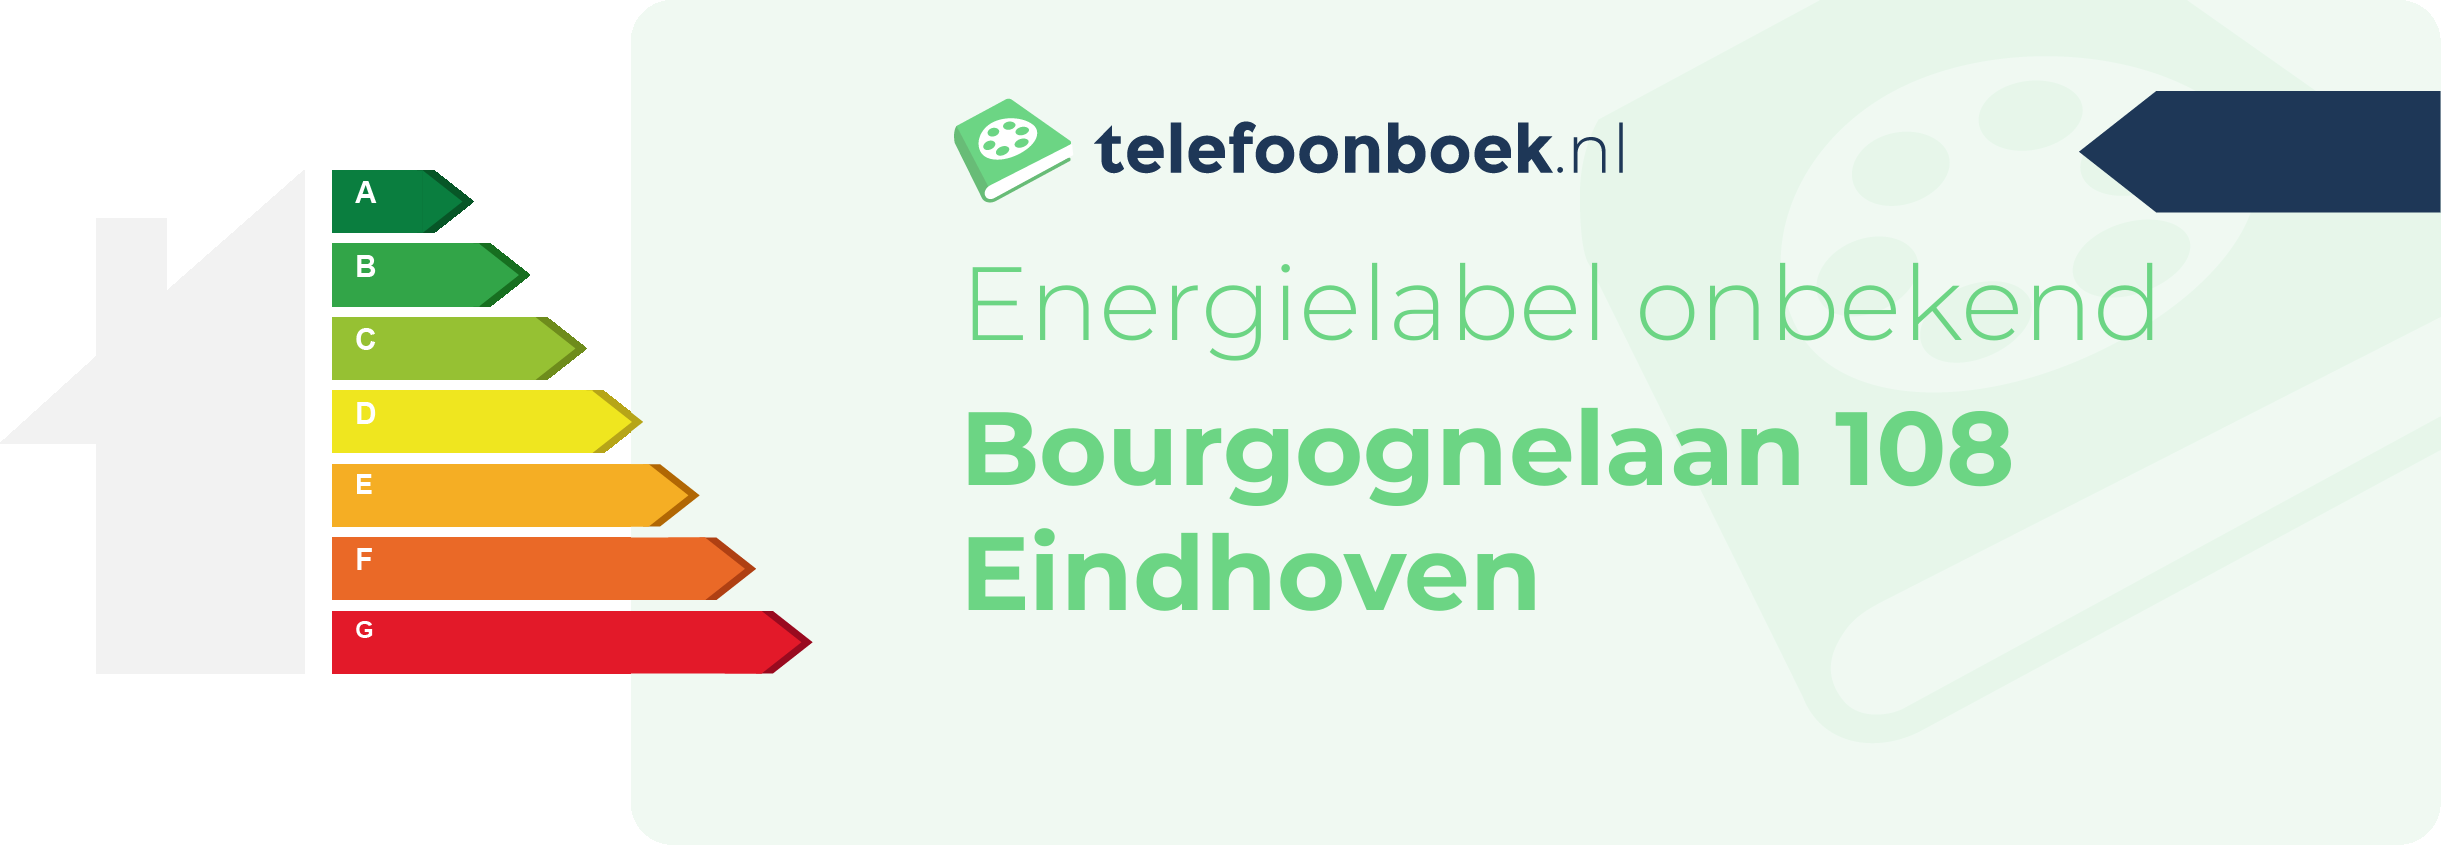 Energielabel Bourgognelaan 108 Eindhoven